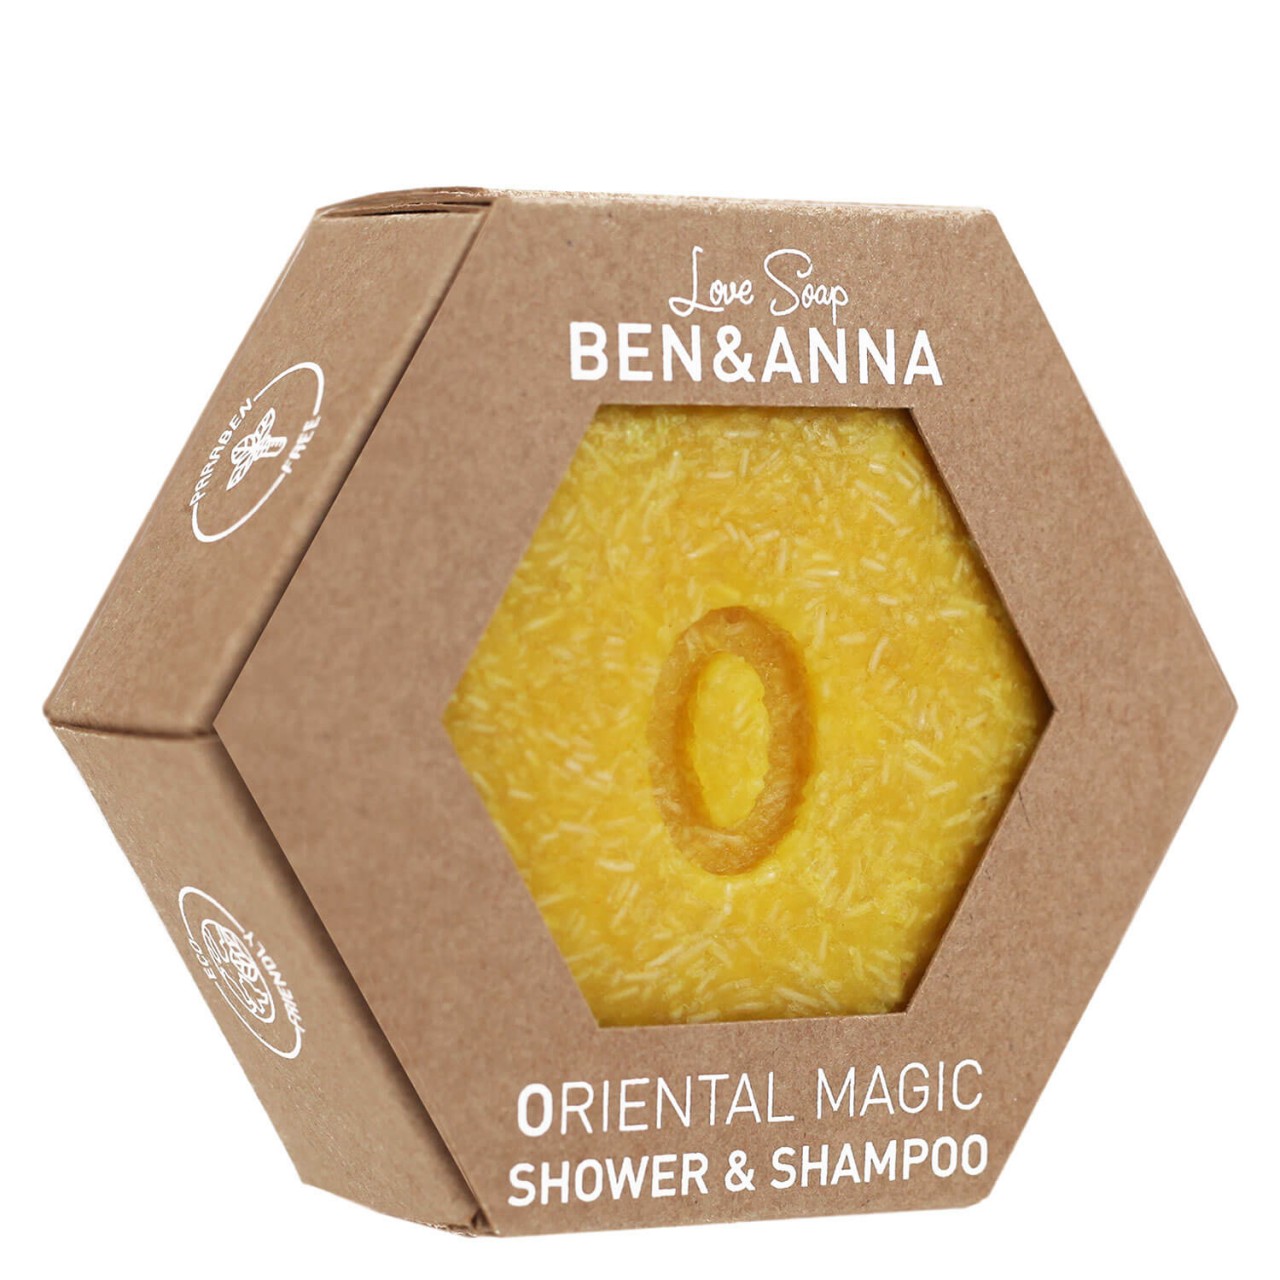 BEN&ANNA - Oriental Magic Shower & Shampoo von BEN&ANNA